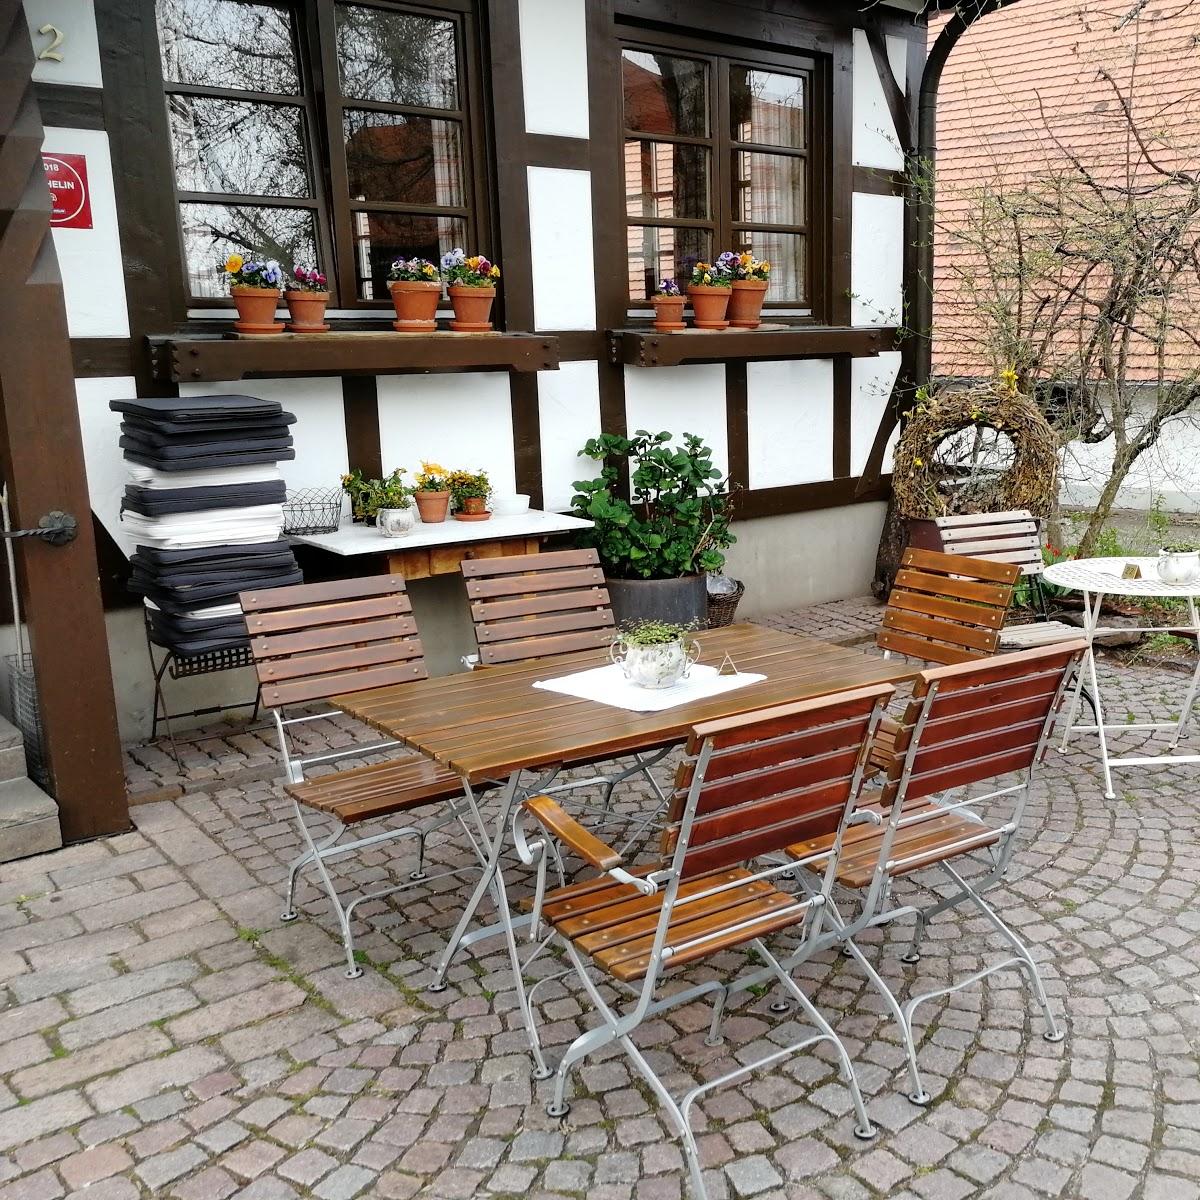 Restaurant "Cafe Rapp" in  Schwarzwald